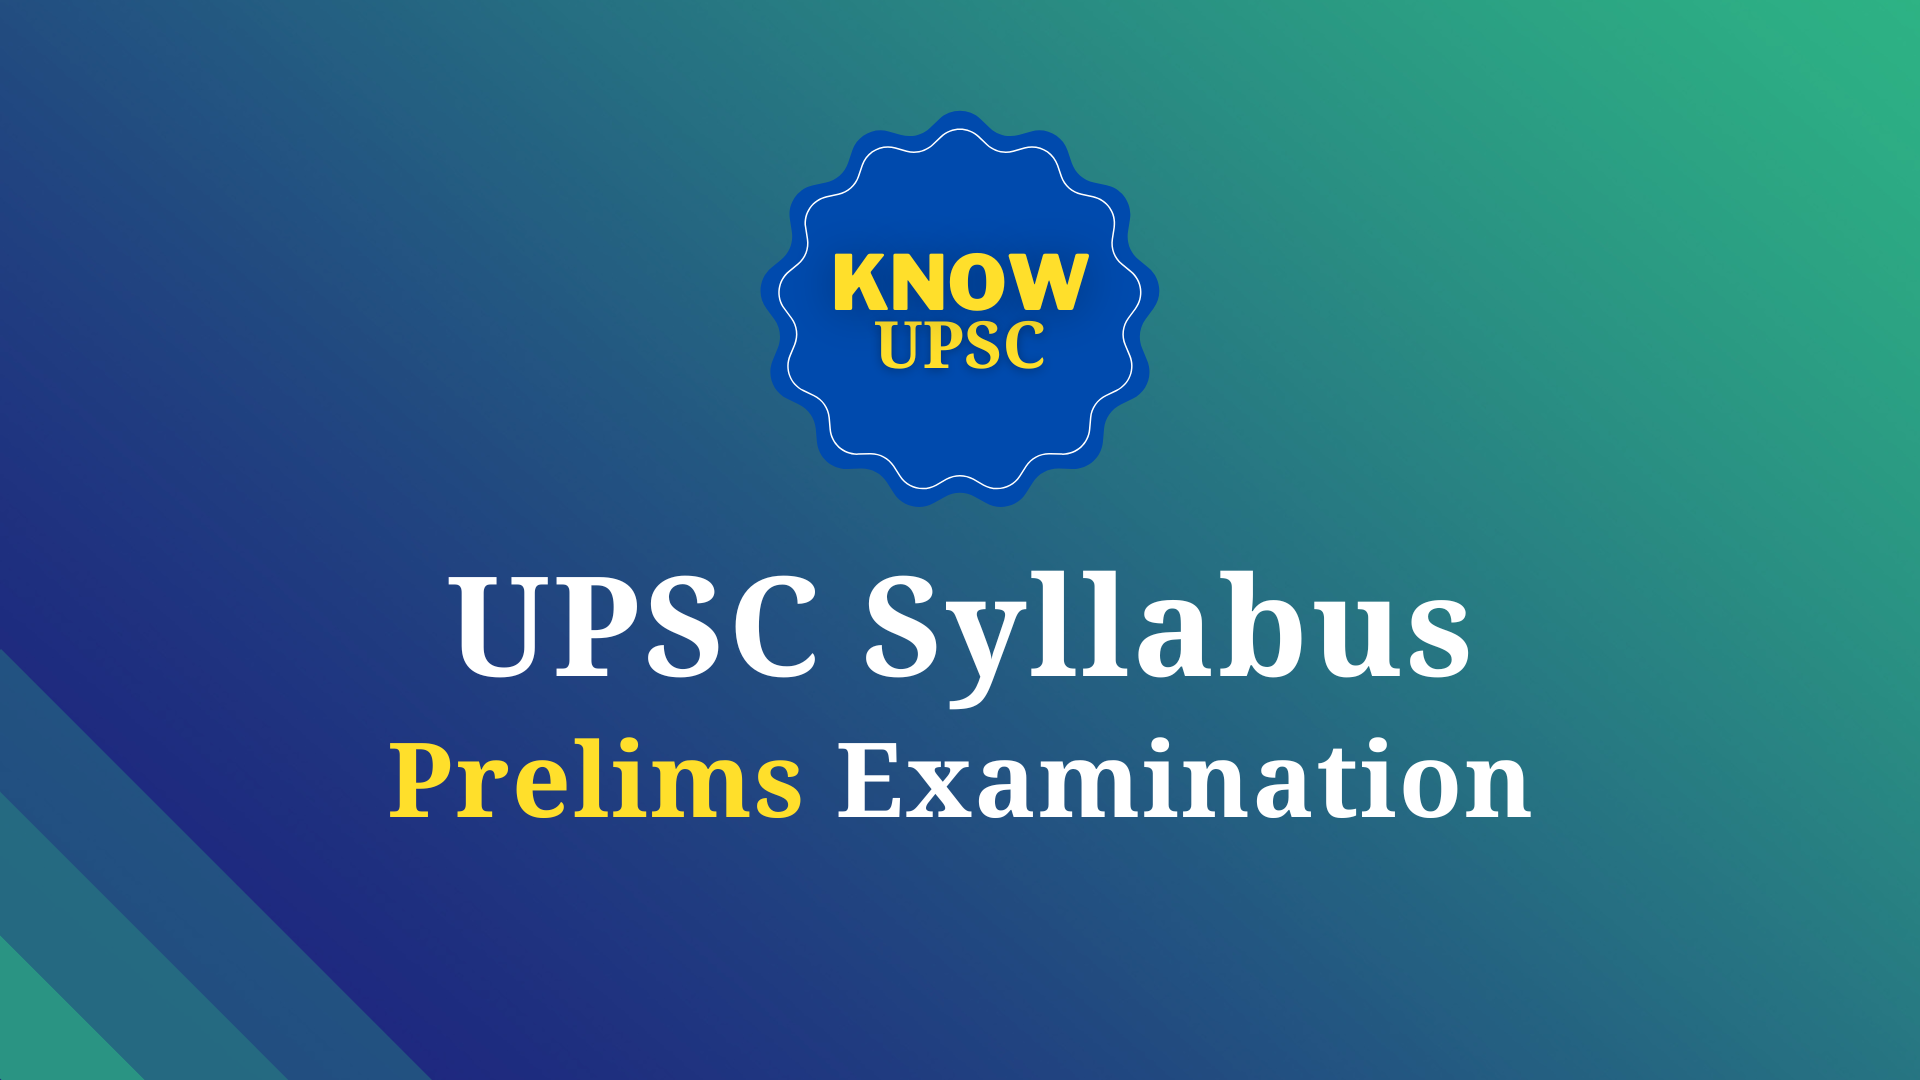 UPSC Prelims syllabus